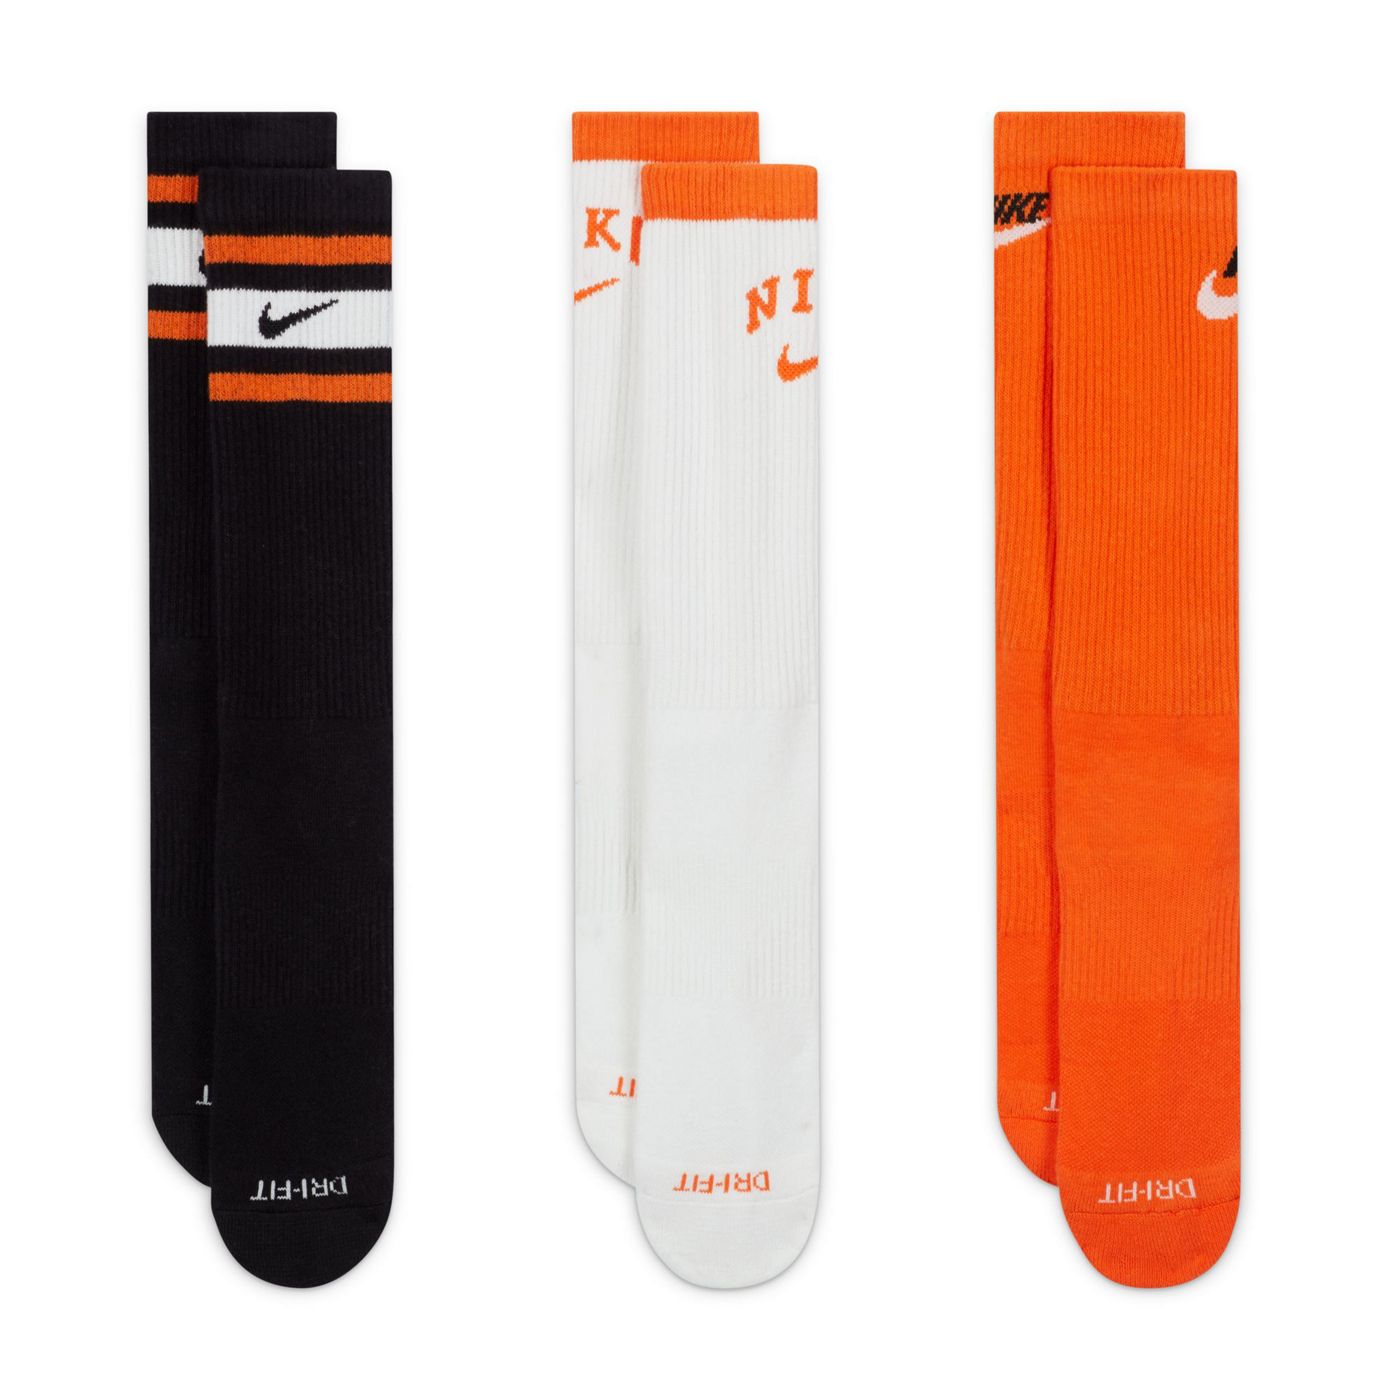 Nike Training unisex cushioned 3 pack logo crew sock in black,white and orange